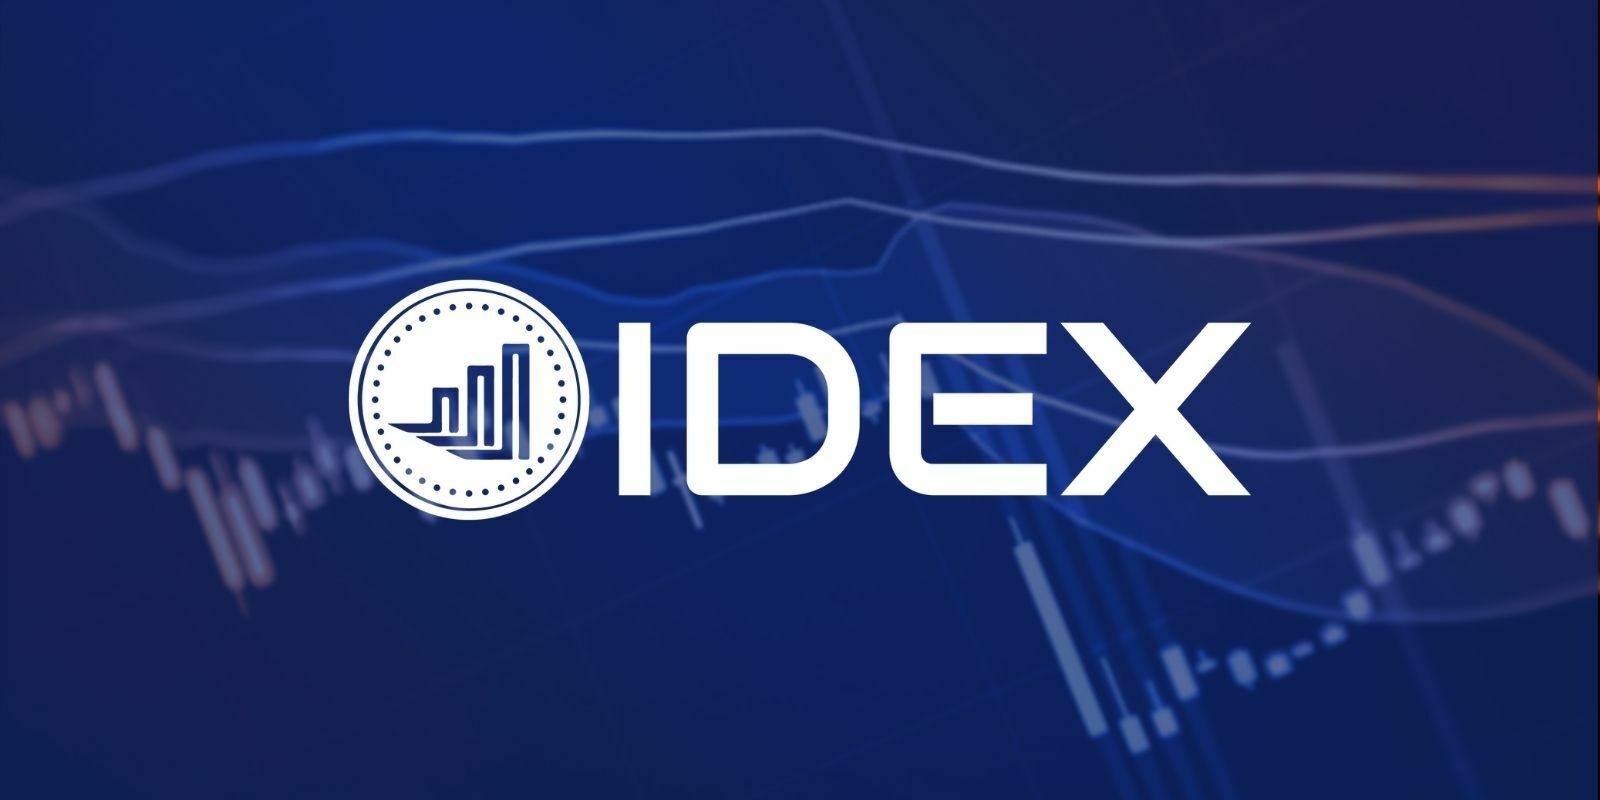 L'exchange décentralisé IDEX lève $2,5M et révèle l'arrivée d'IDEX 2.0